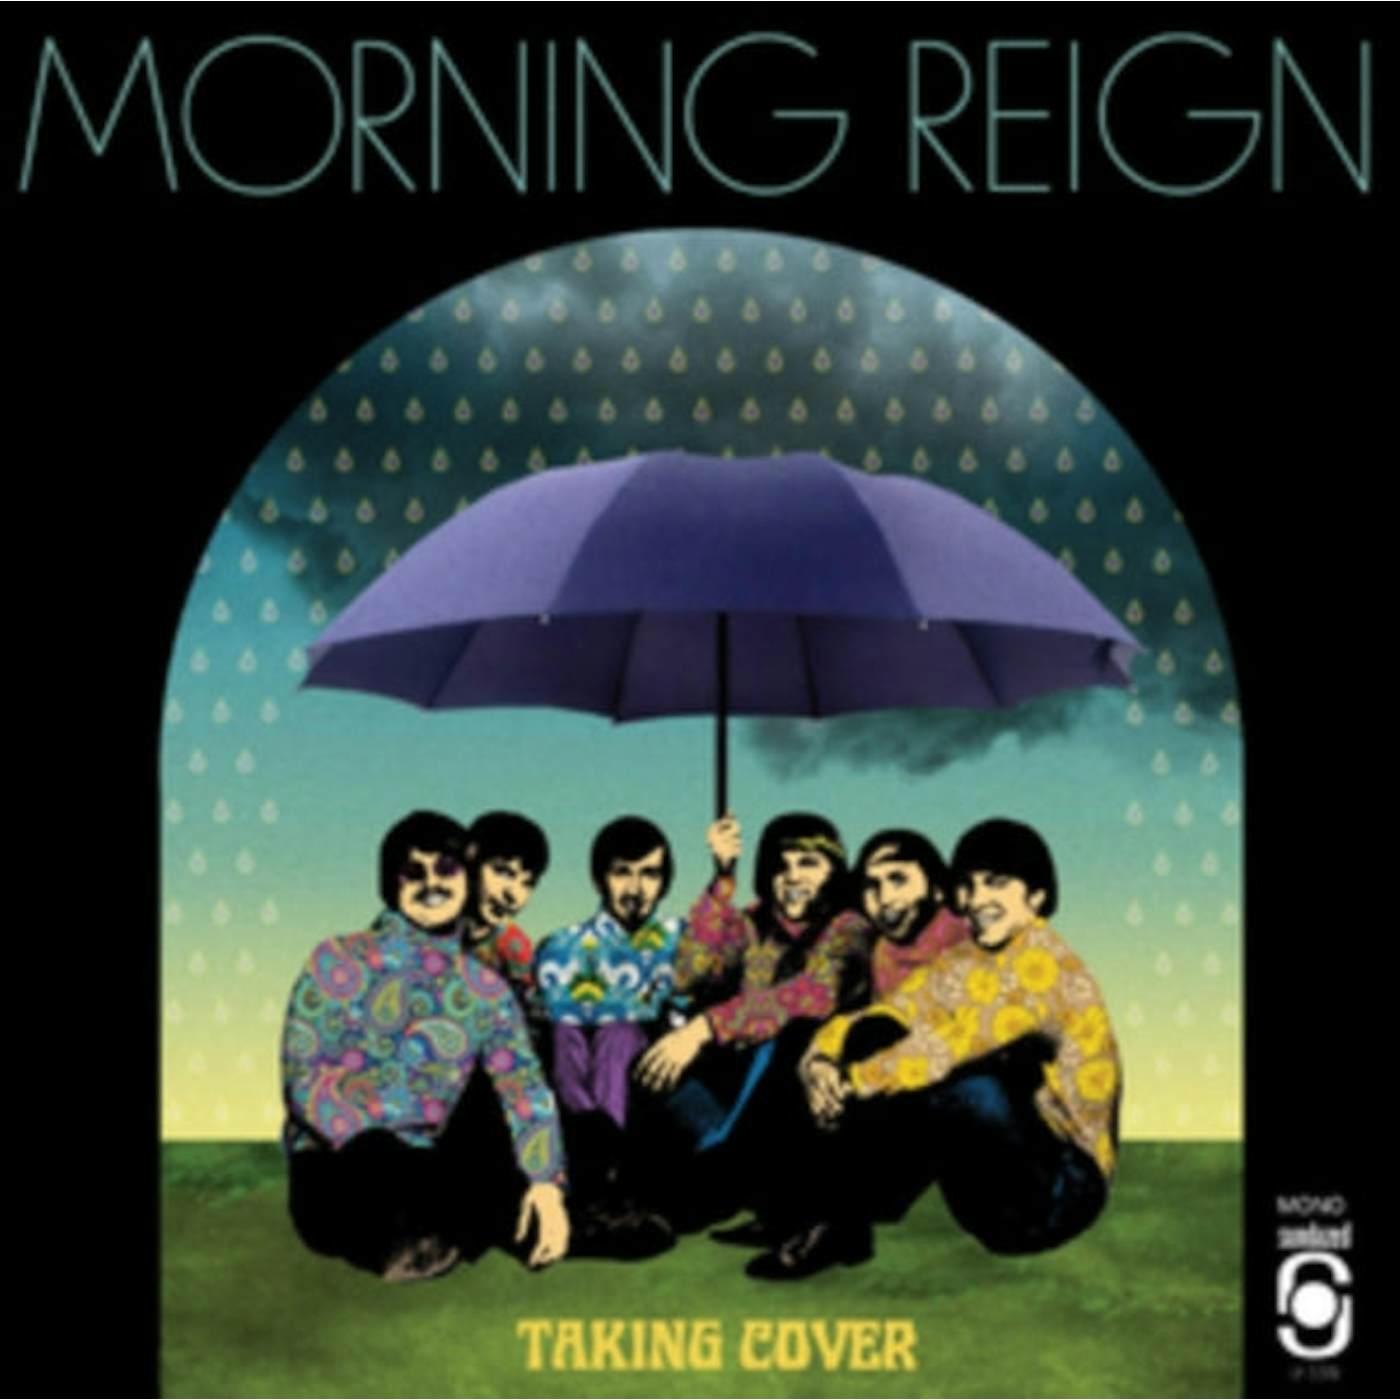 Morning Reign LP Vinyl Record - Taking Cover (Blue Vinyl)